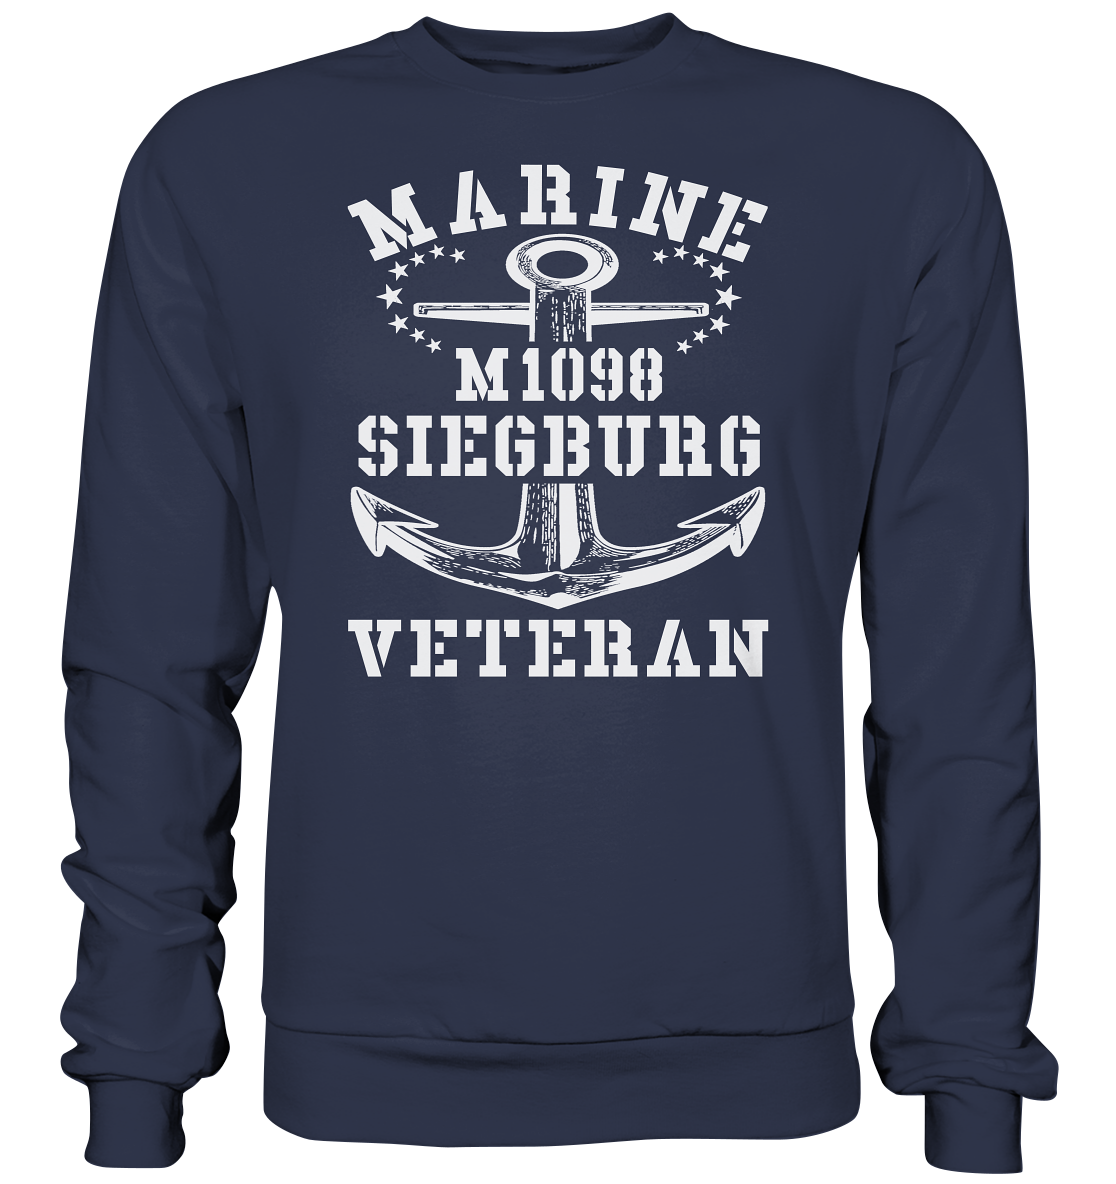 M1098 SIEGBURG Marine Veteran - Premium Sweatshirt